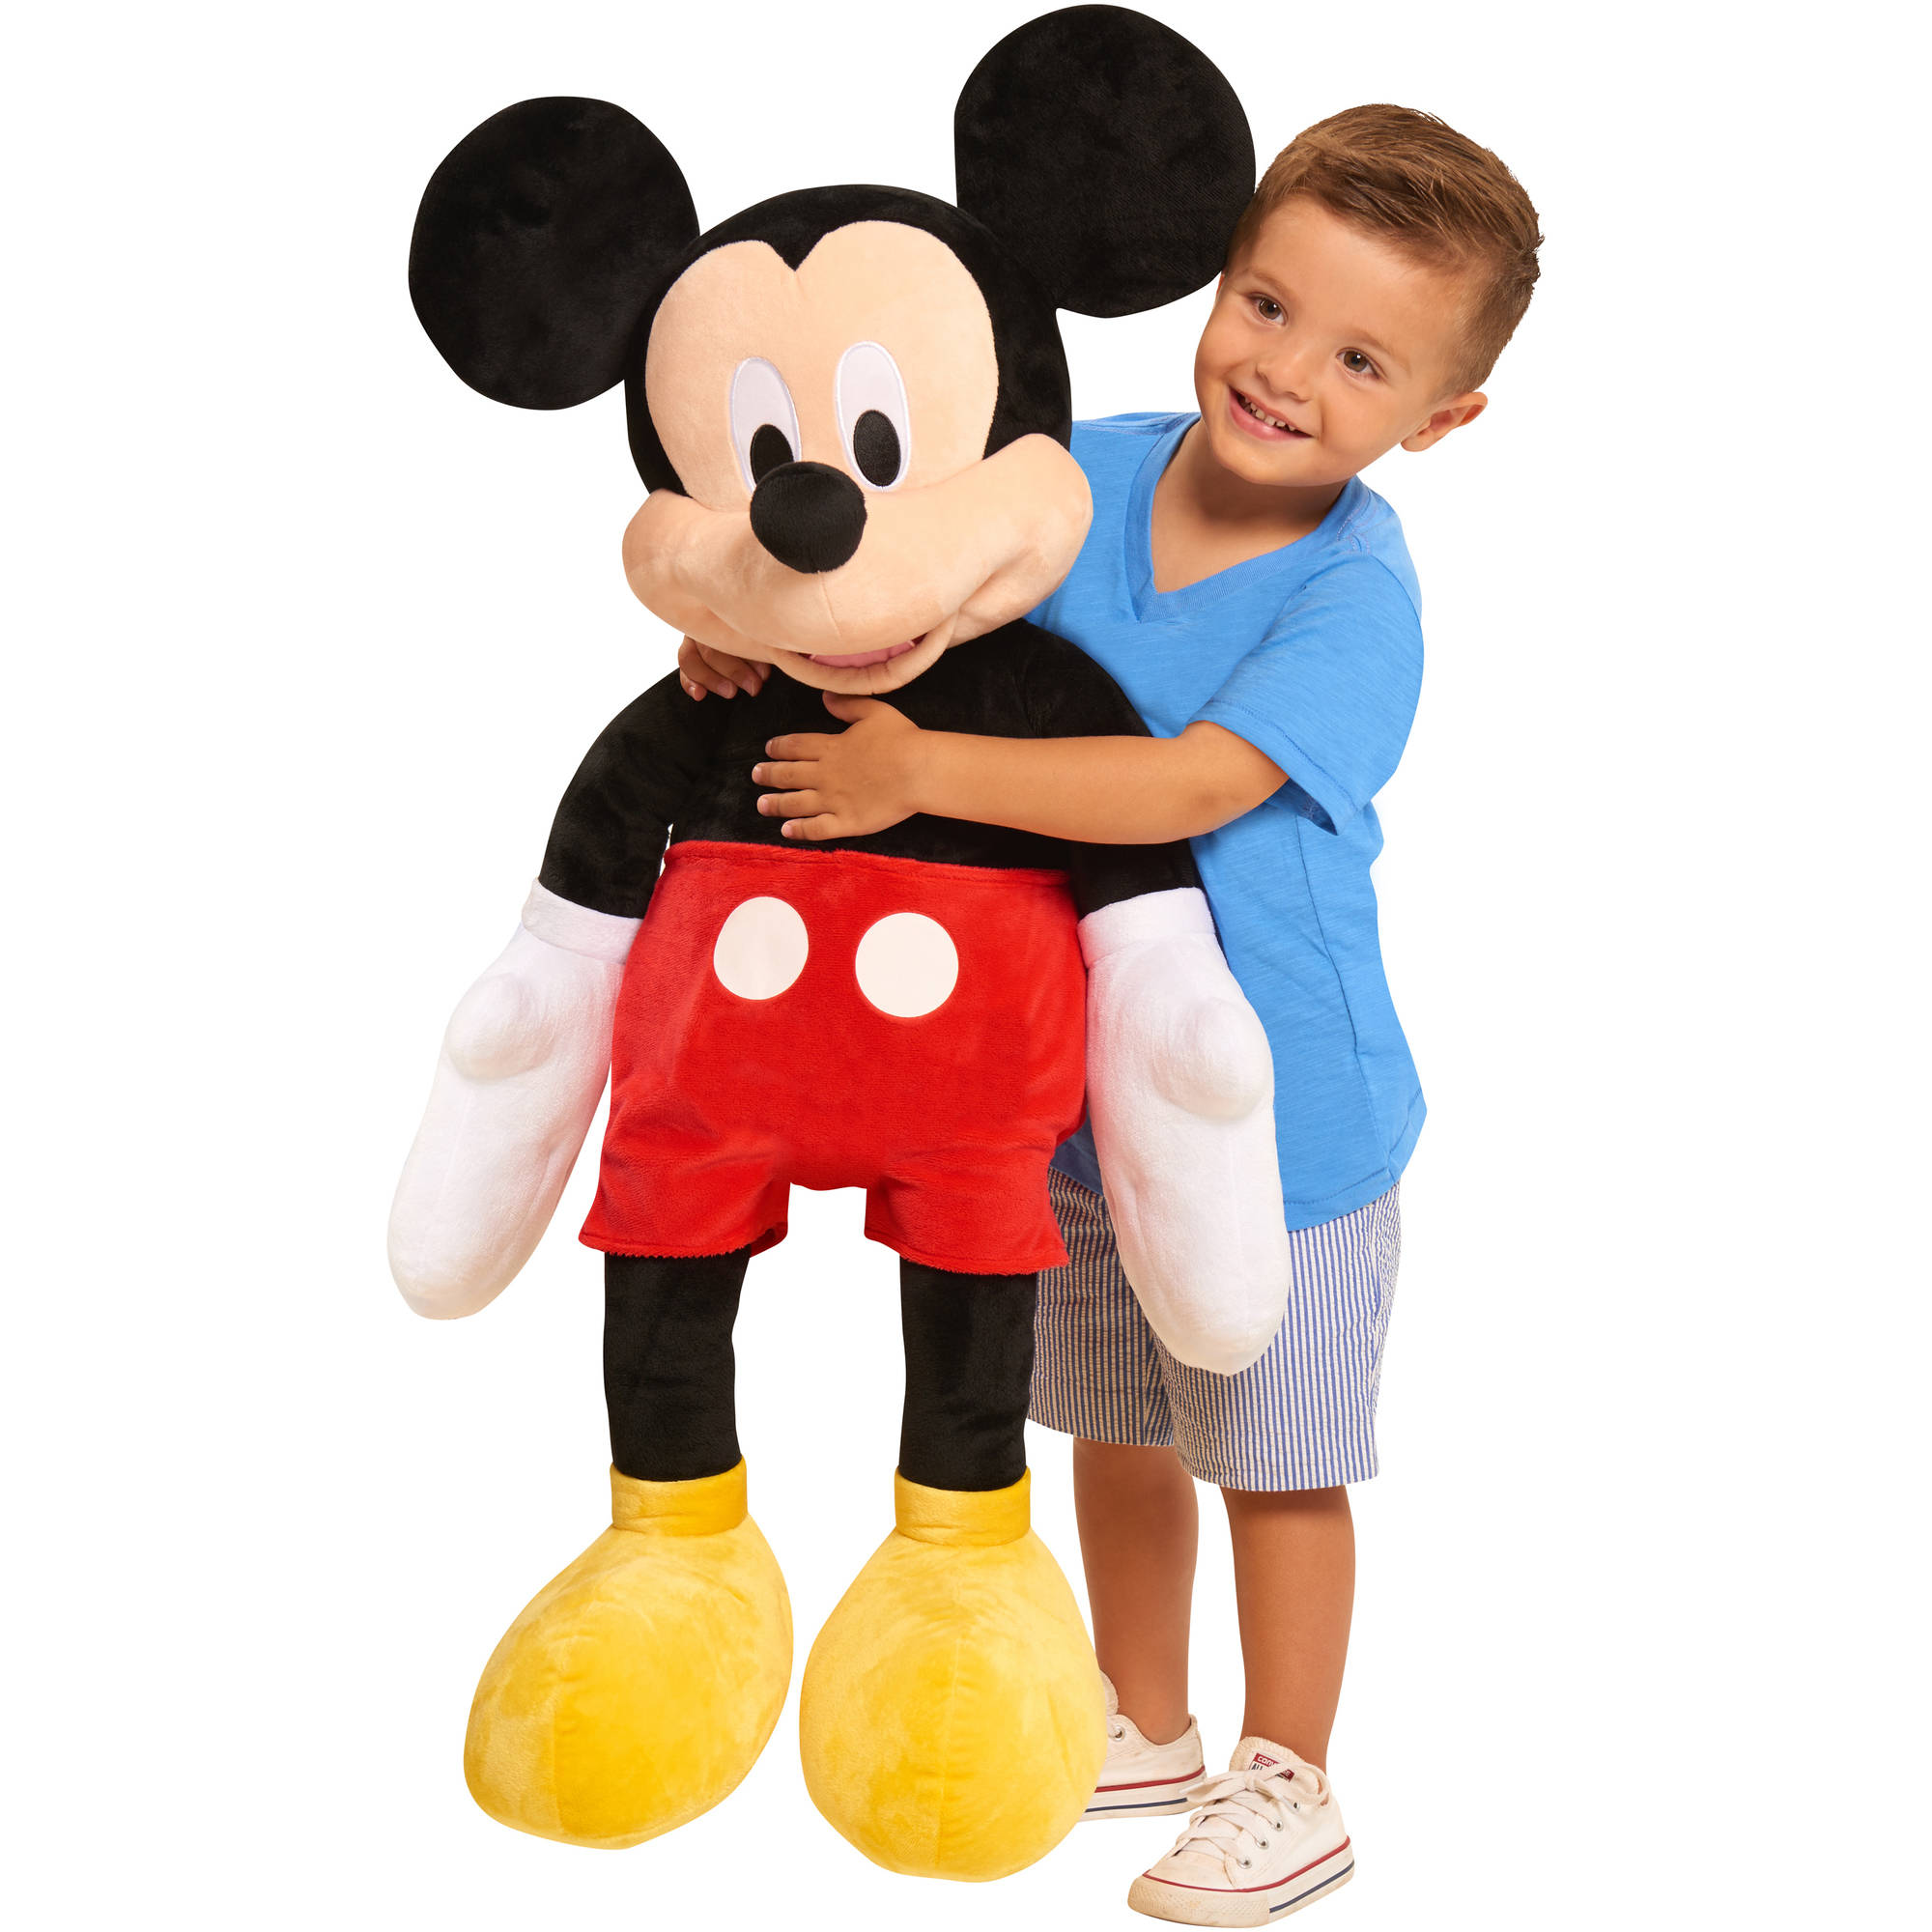 Diset- Mickey Mouse Dessineo étape, Jouet éducatif pour Apprendre à  Dessiner Les Personnages préférés de Disney pour Les Enfants à partir de 4  Ans